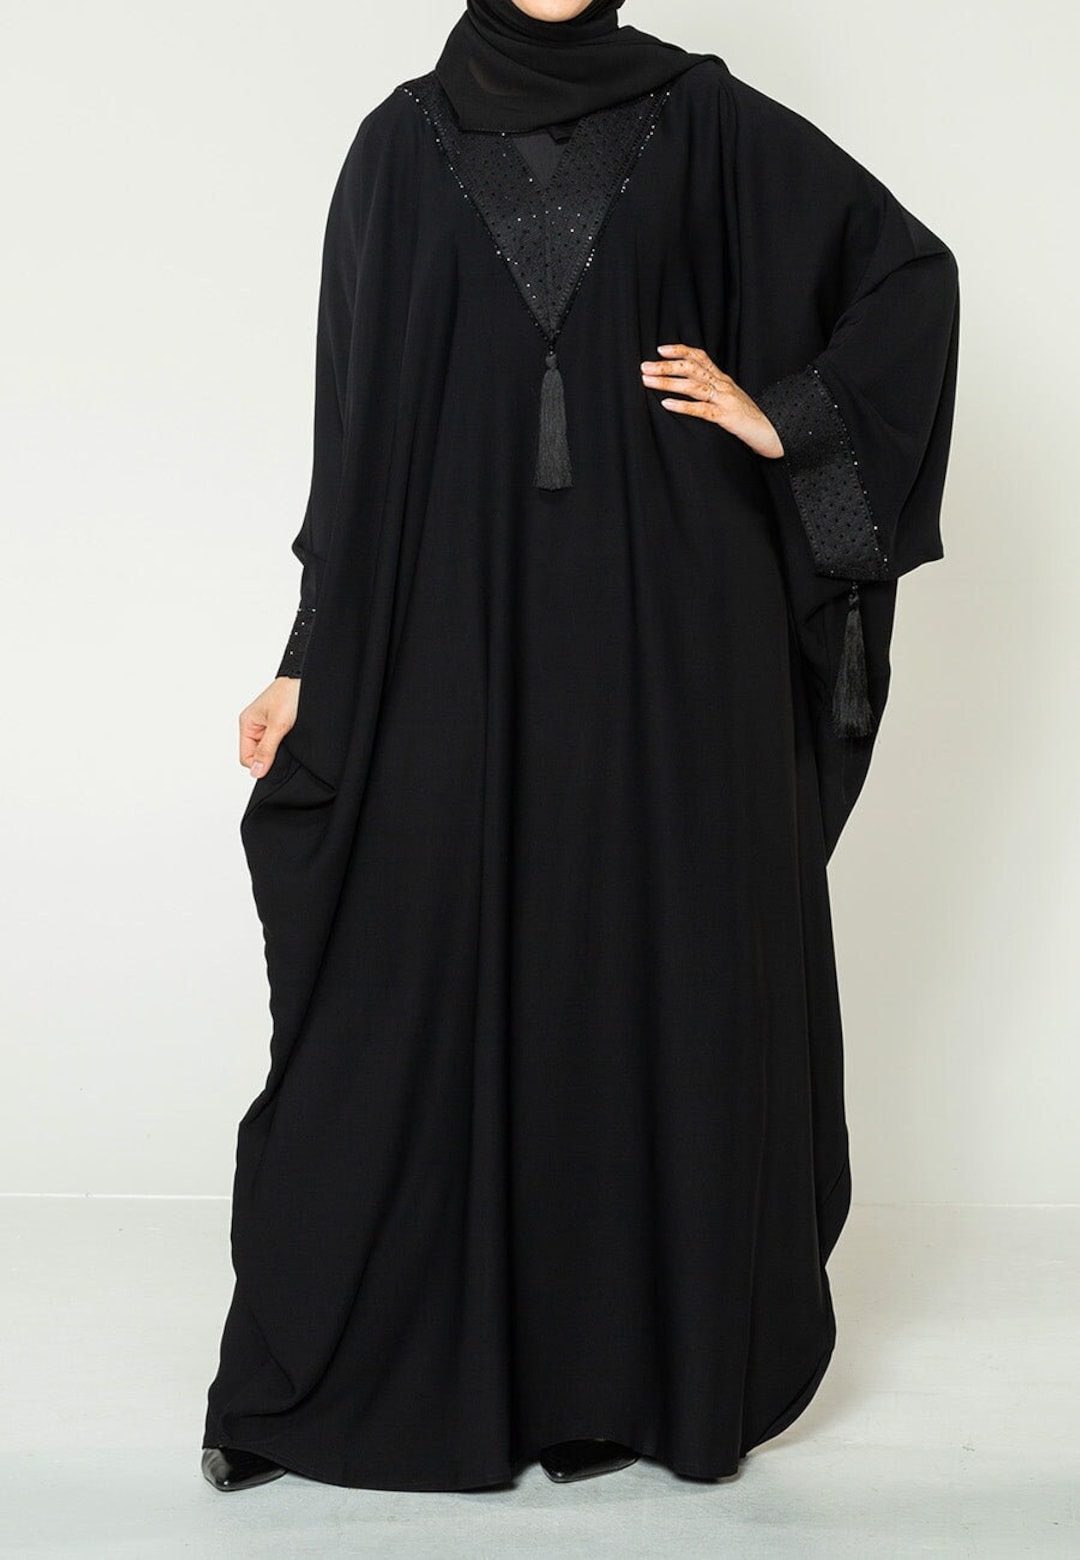 Black Moroccan Inspired Dubai Kaftan Dress / Abaya / Farasha Dress for ...